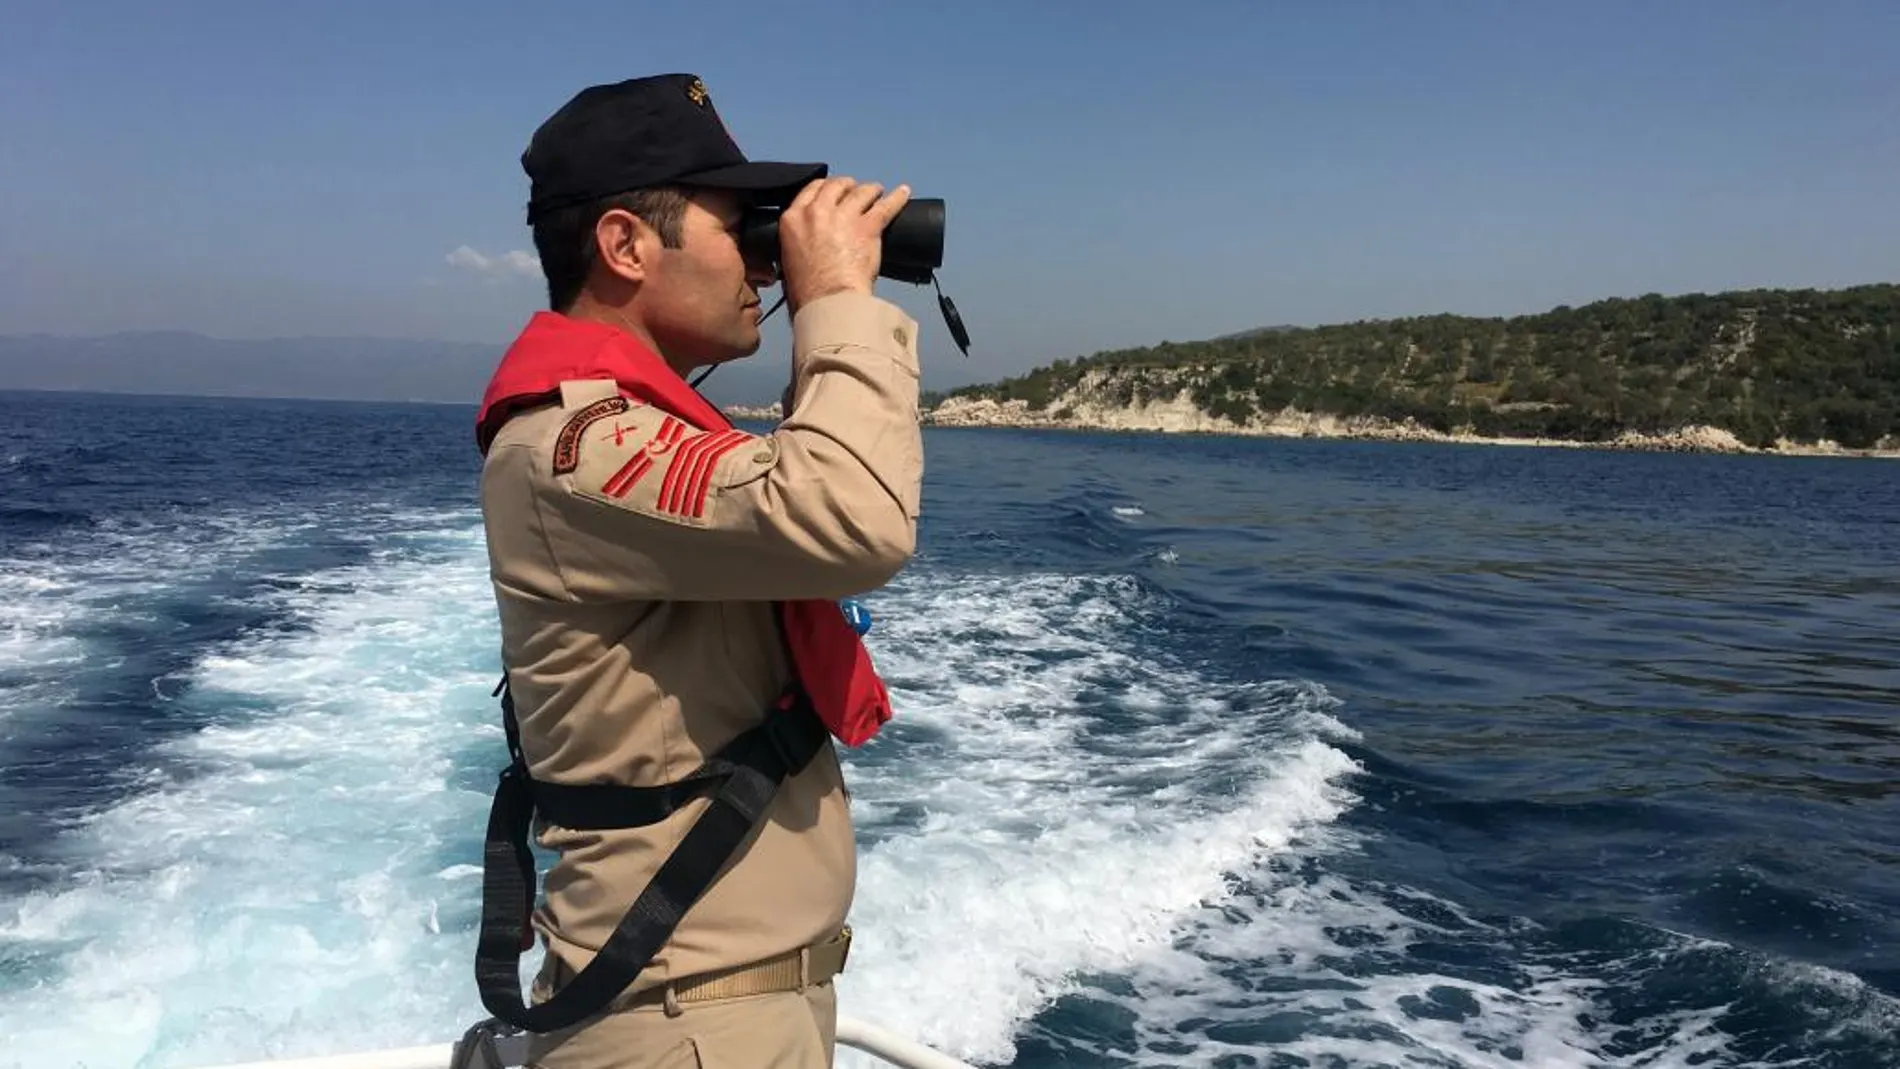 Los guarda costas turcos detuvo la embarcación cuando navegaba por el mar de Mármara